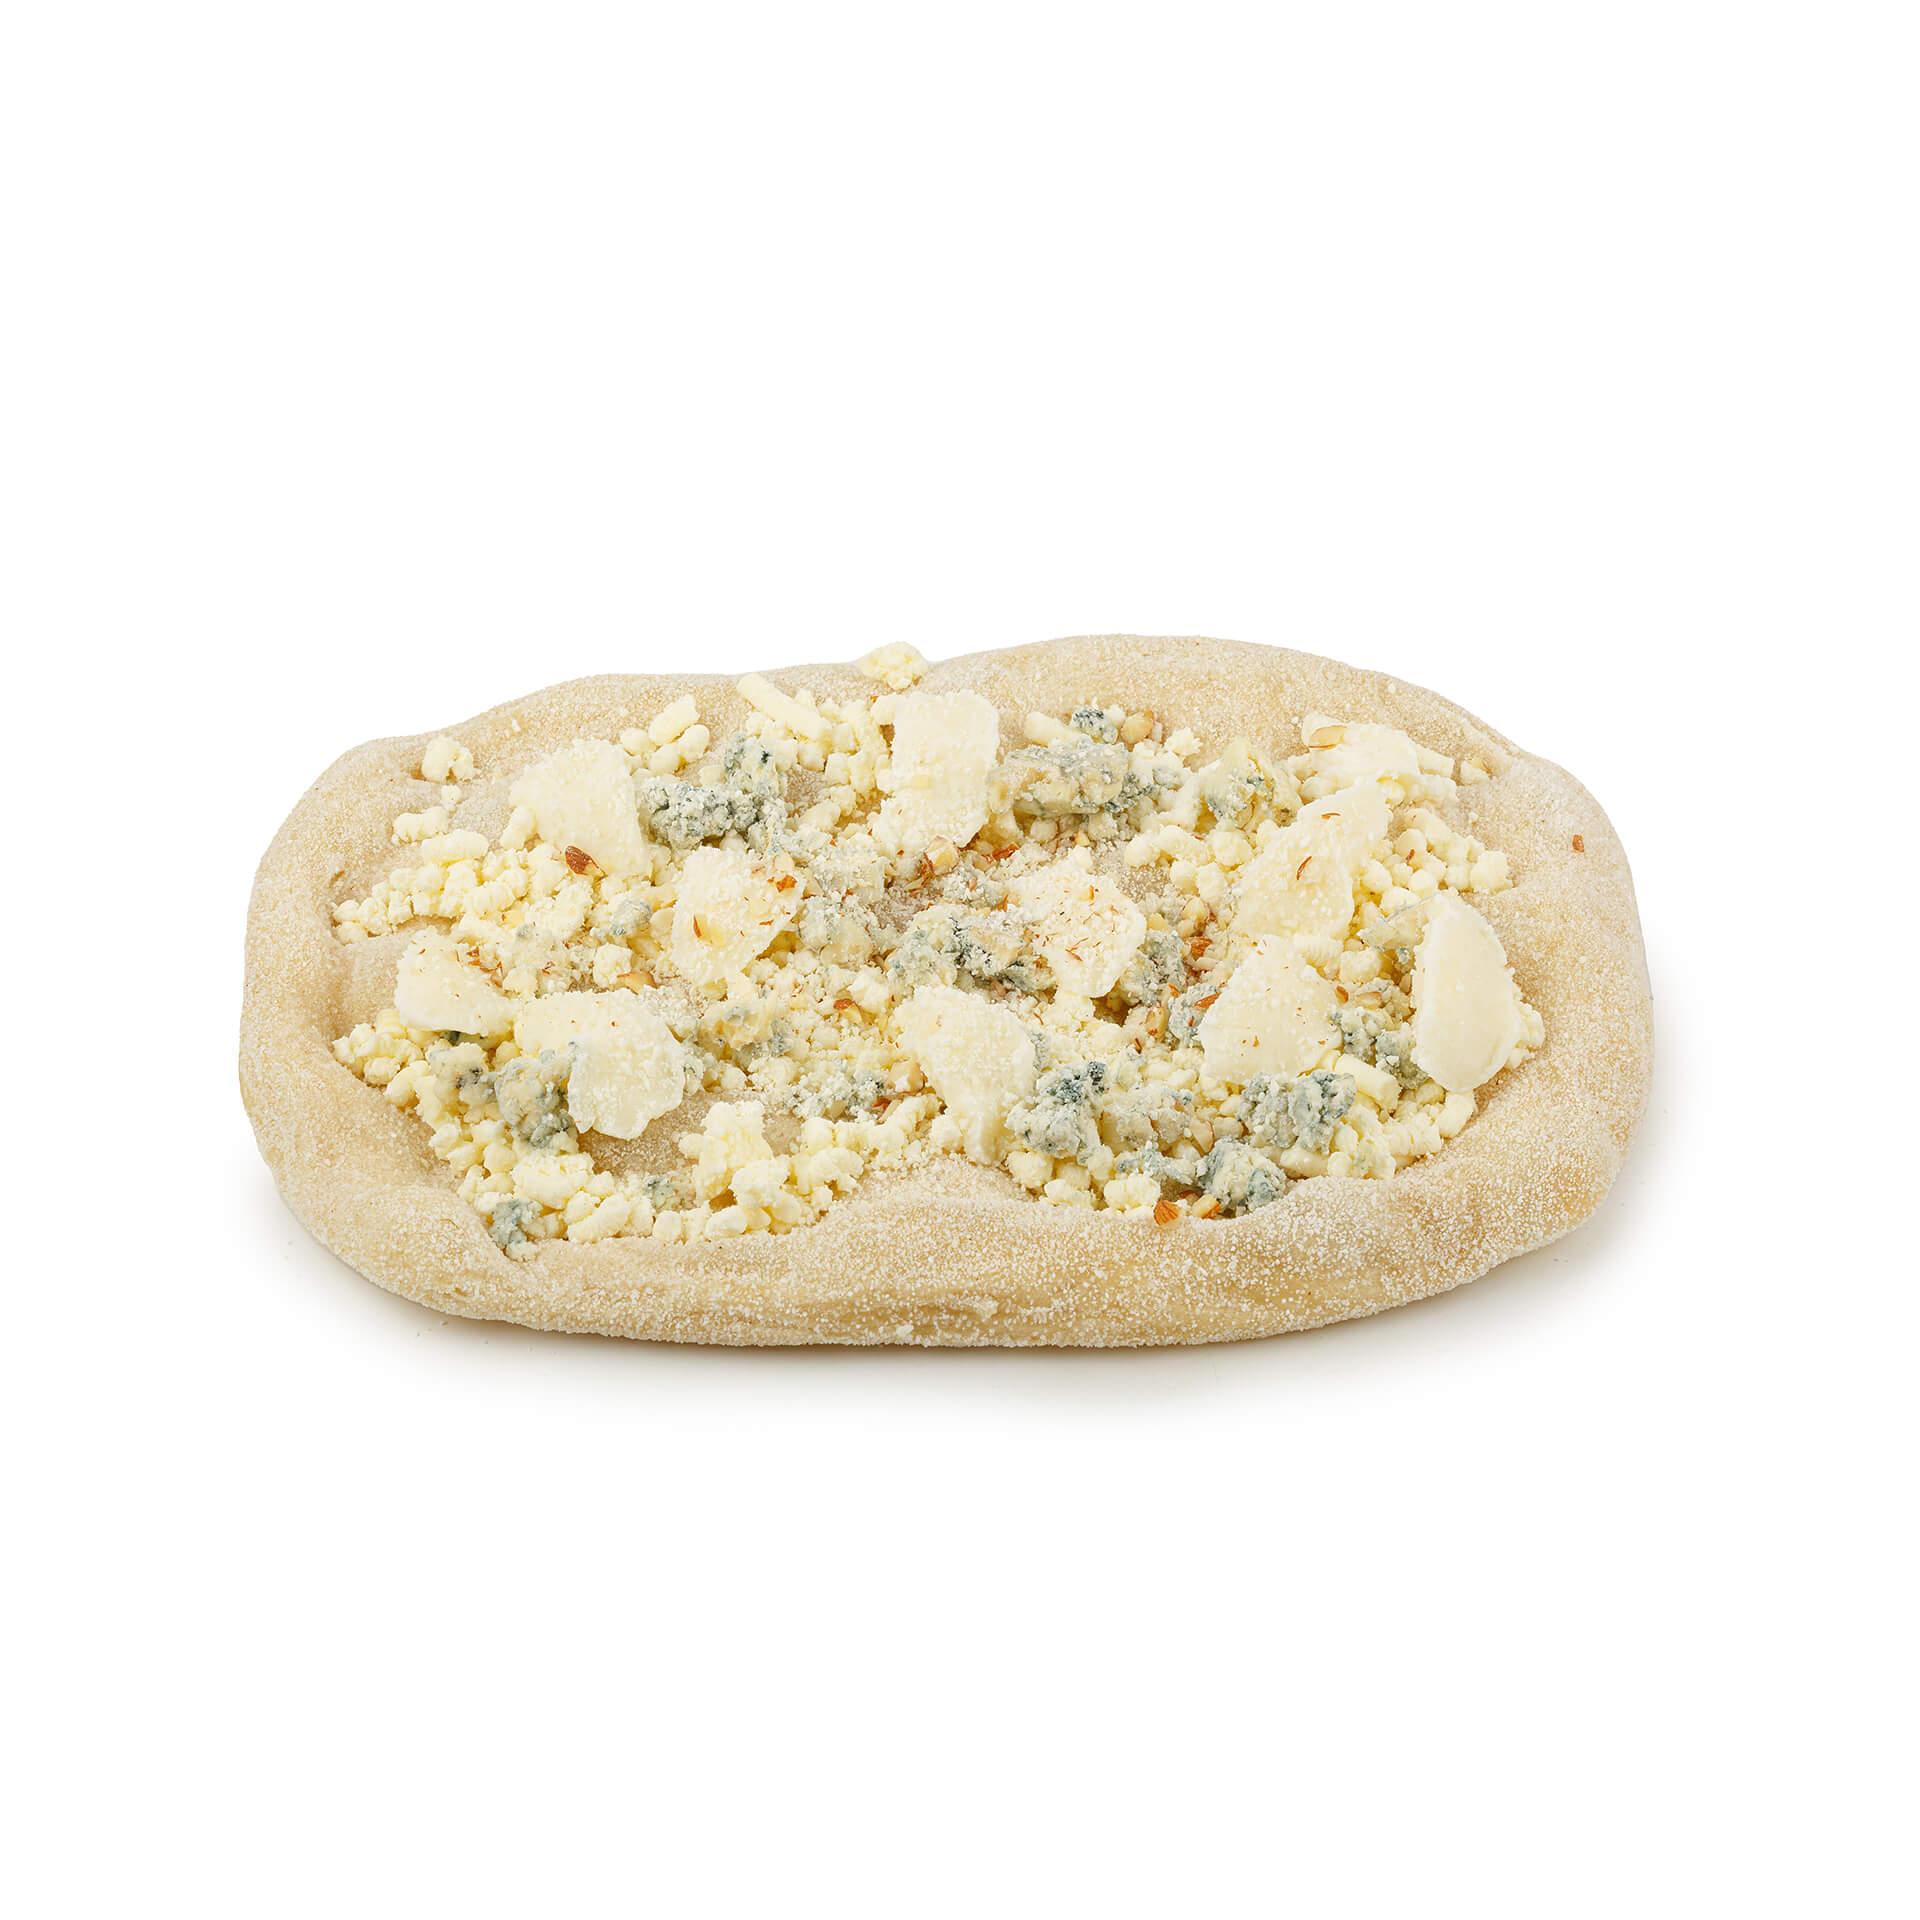 Римская пицца Maestrello Четыре сыра сырная с миндалем и медом 365 гр., картон